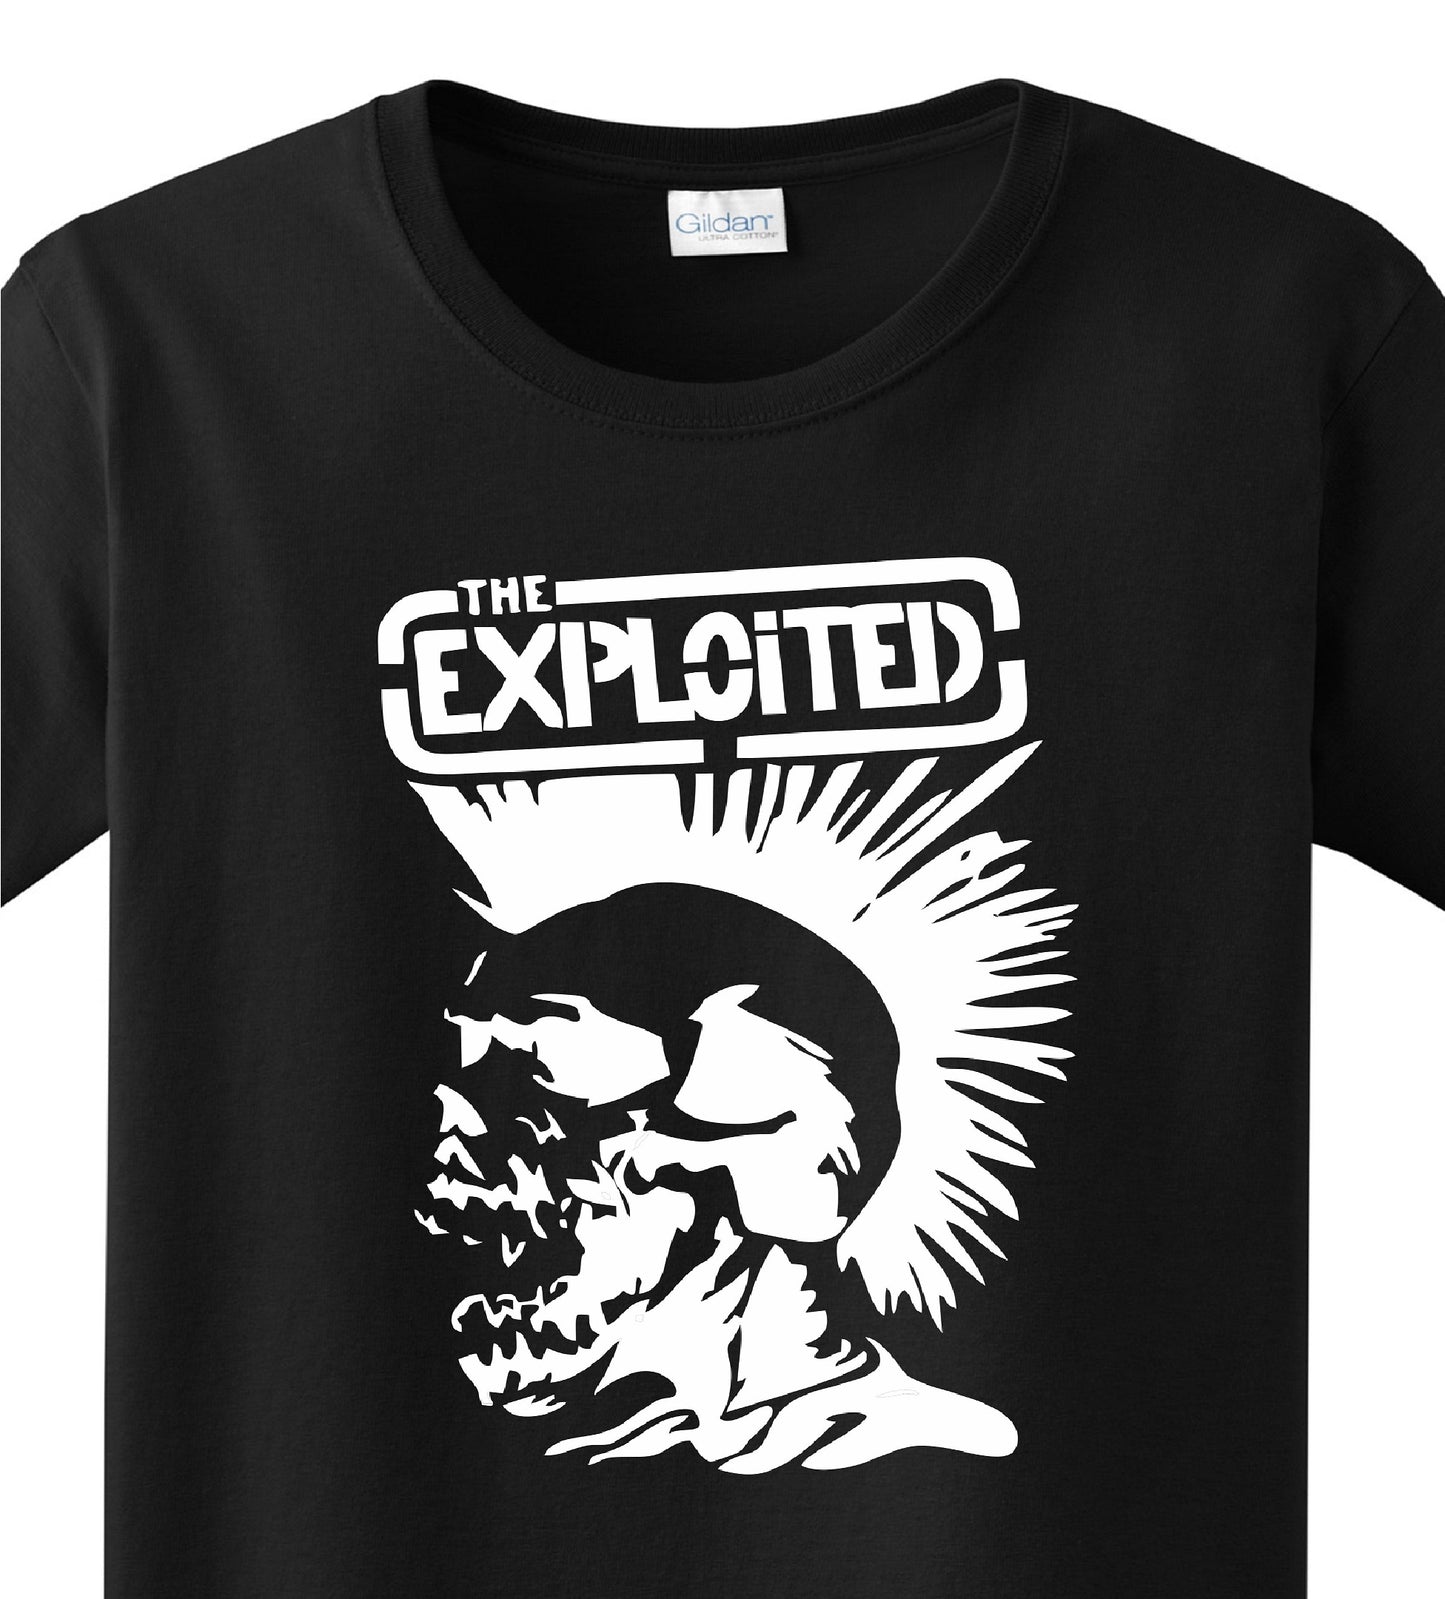 Radical Band  Men's Shirts - Exploited (Black) - MYSTYLEMYCLOTHING